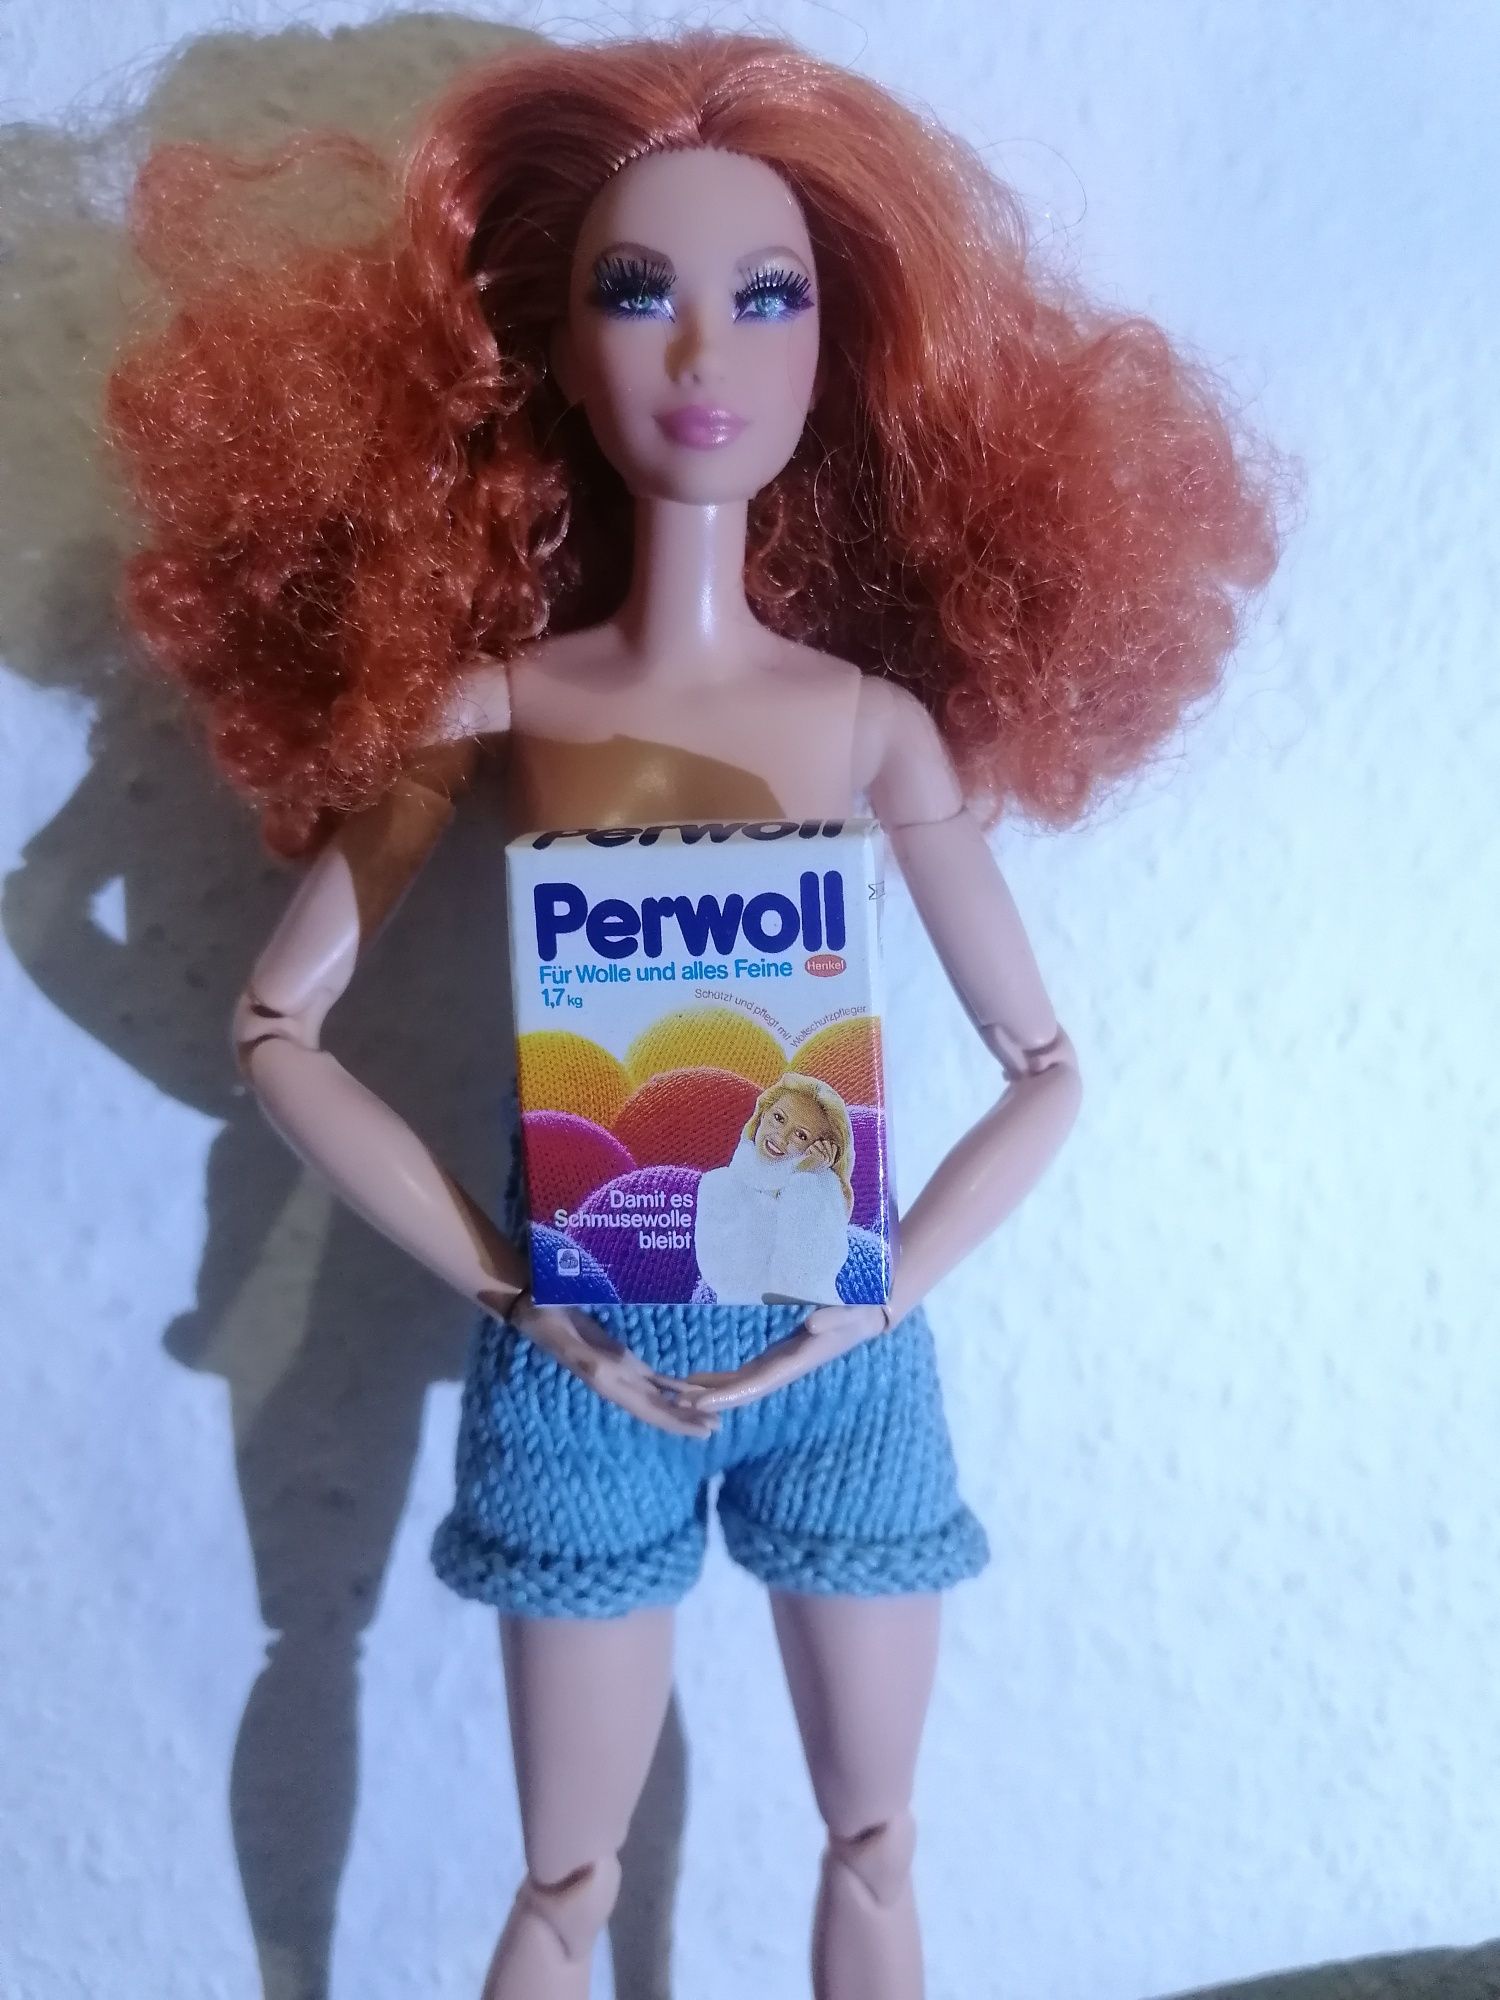 Мініатюрна упаковка порошку Perwoll для ігрових пригод з куклами Барбі